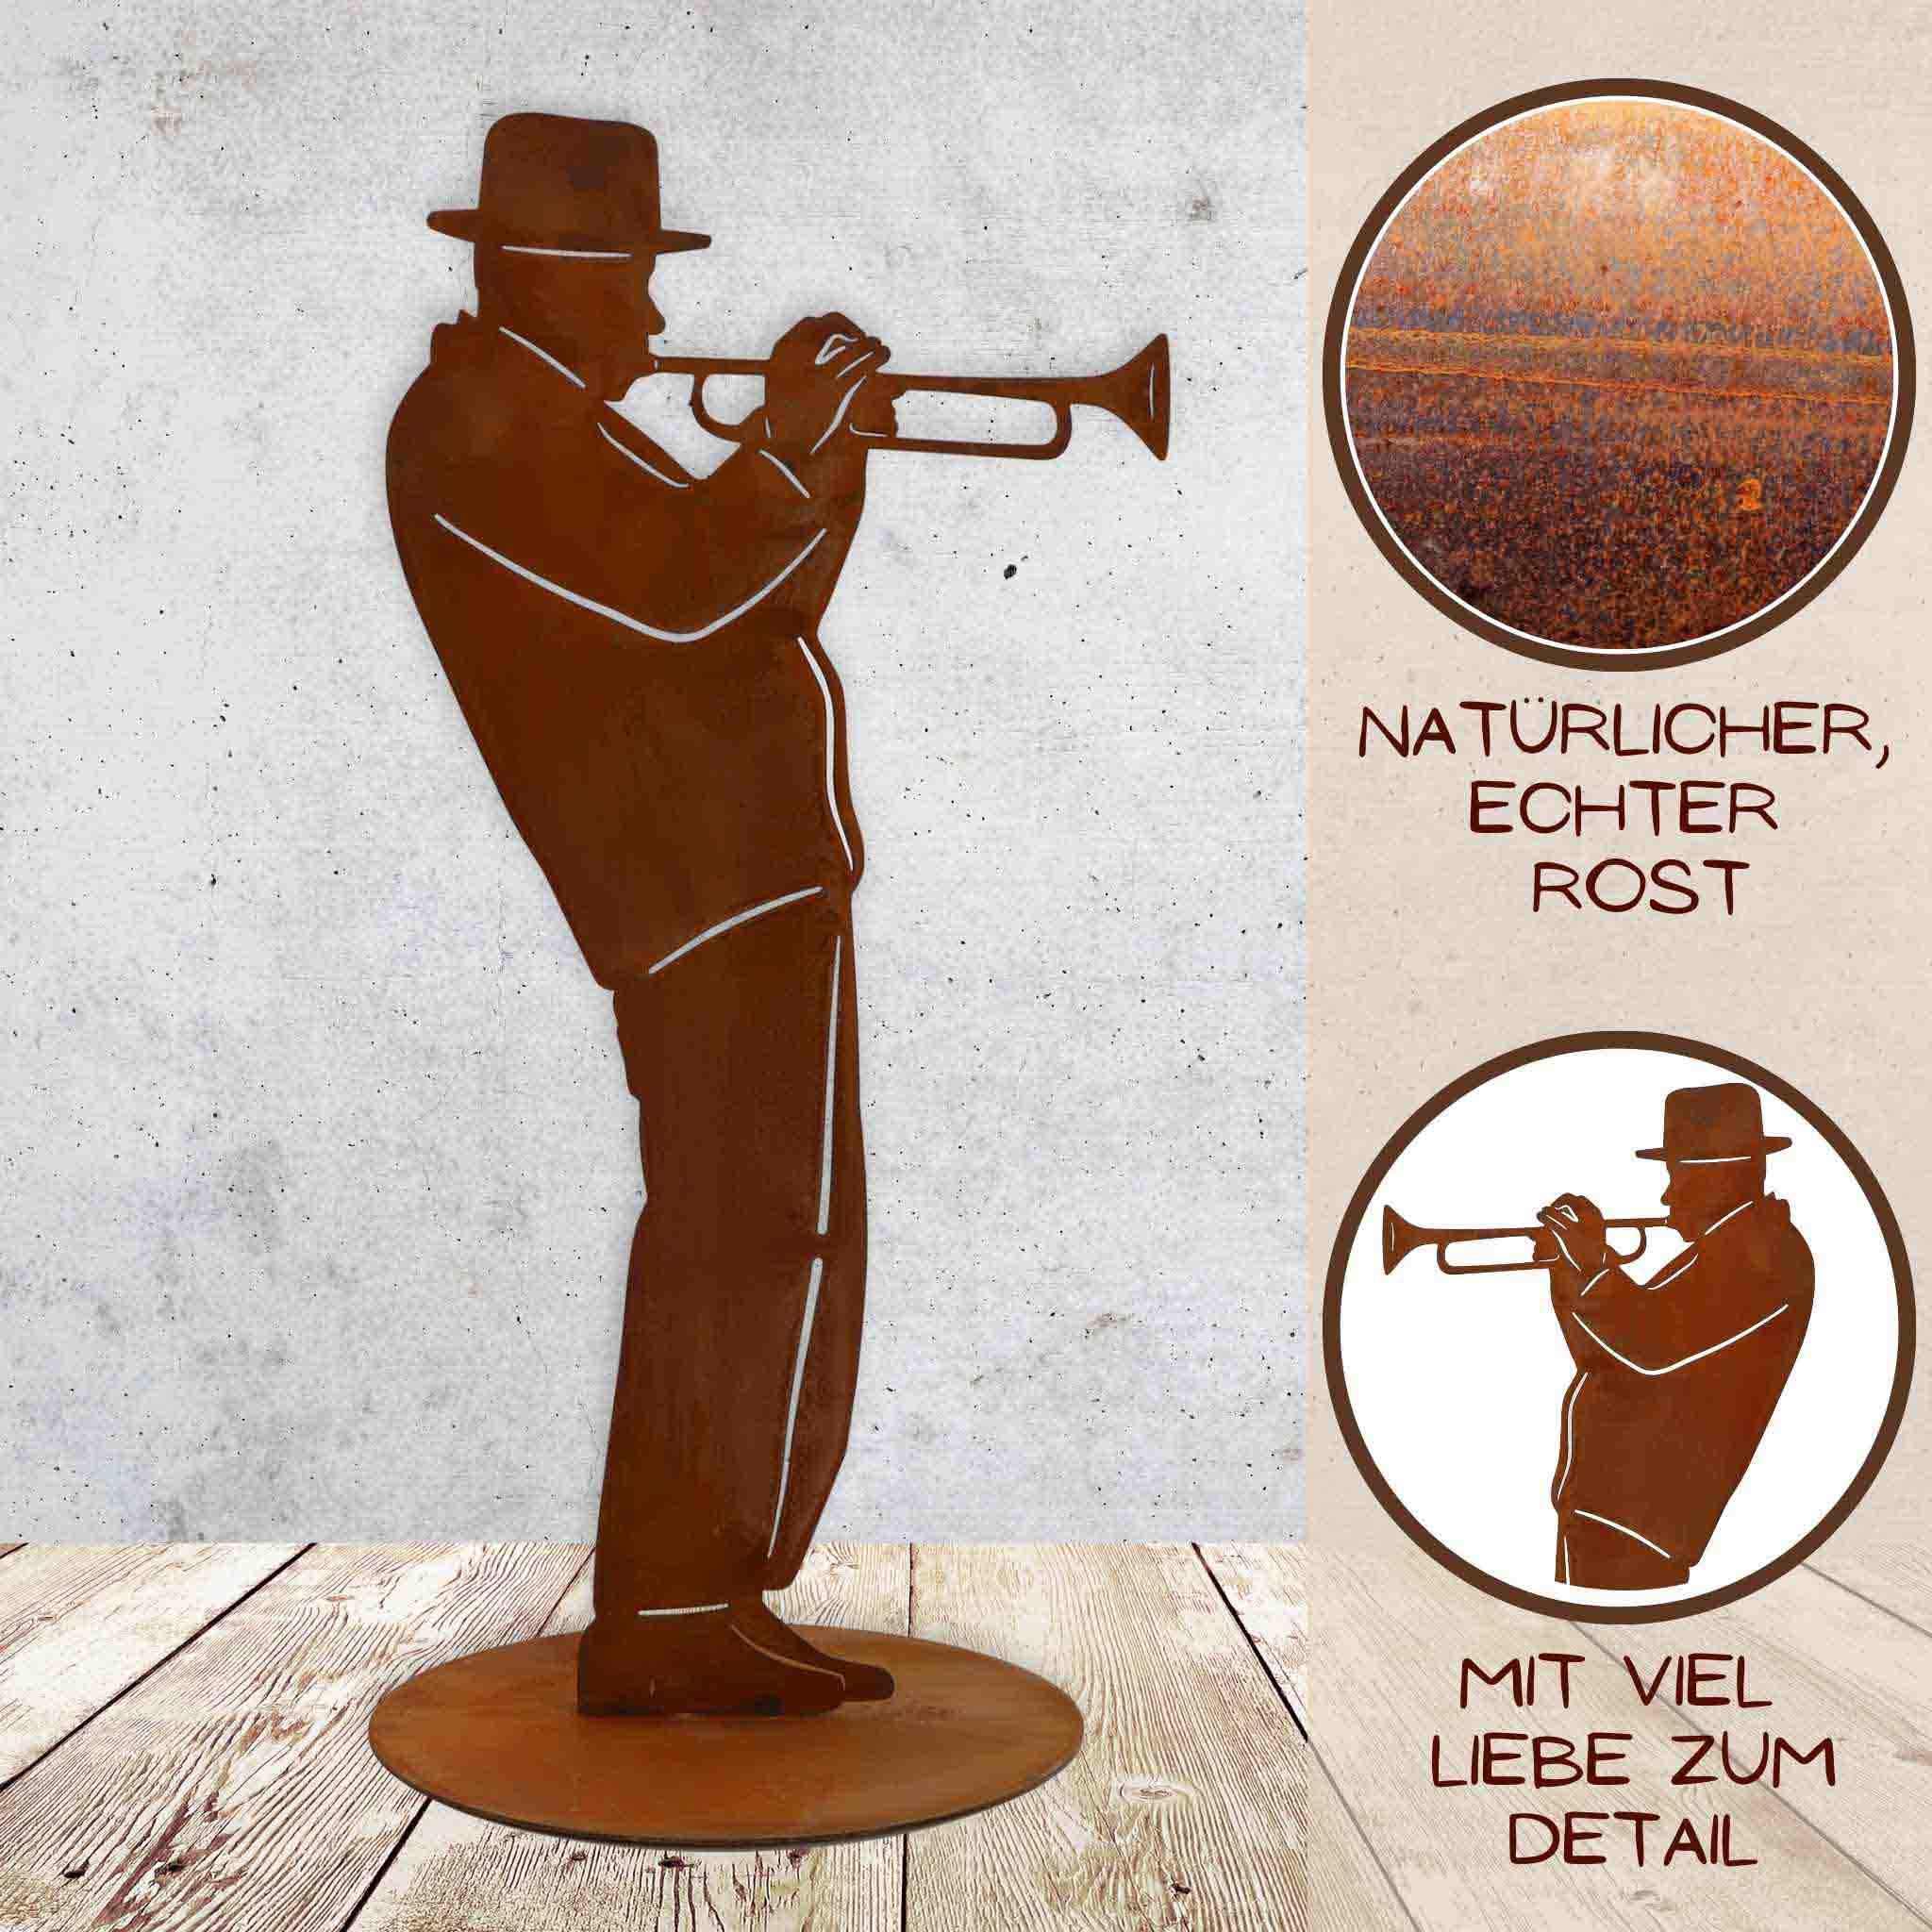 Meisterhaft gefertigte Trompeter Skulptur, 40 cm hoch, auf Ø 18 cm Bodenplatte, mit natürlicher Rostpatina. Hochwertige Verarbeitung, made in Germany.